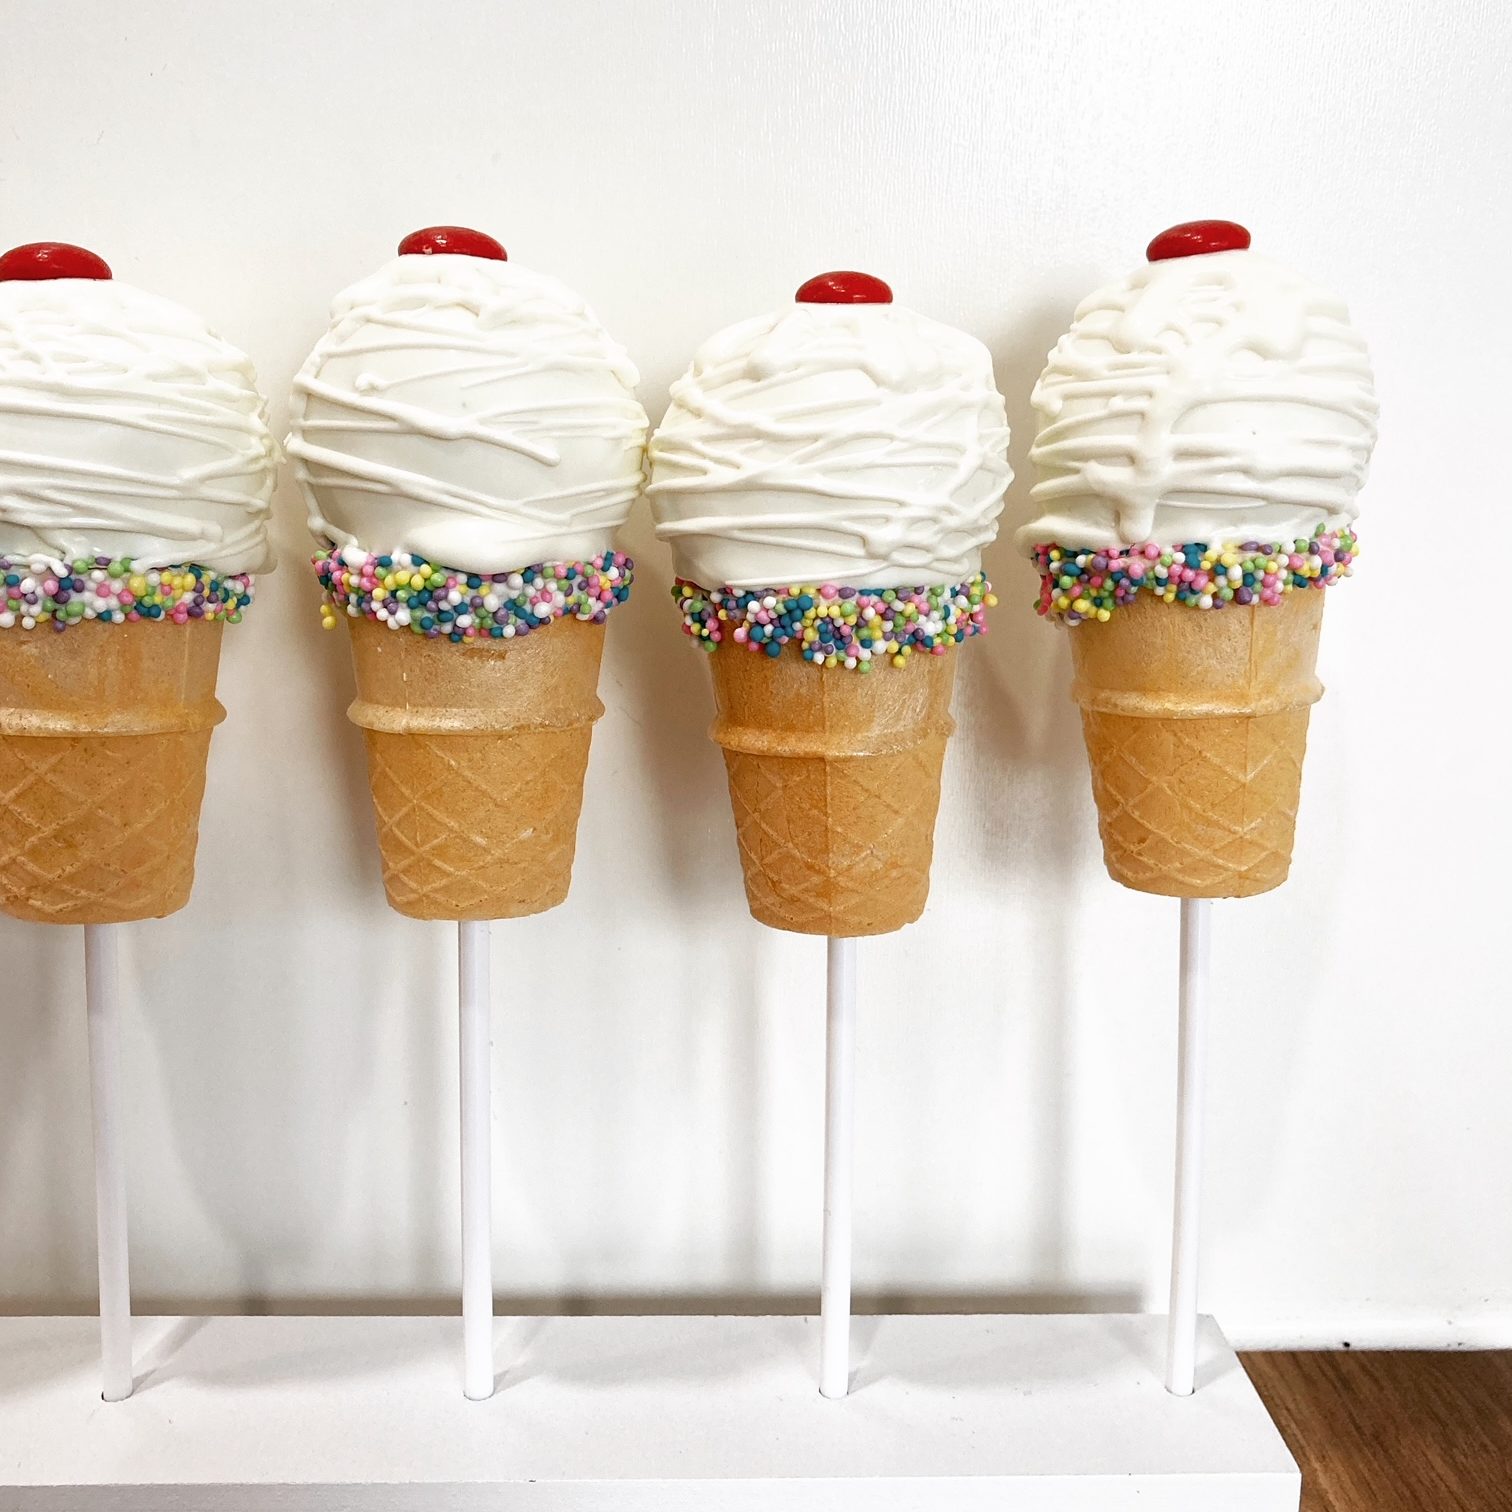 Ice cream cone cake pops